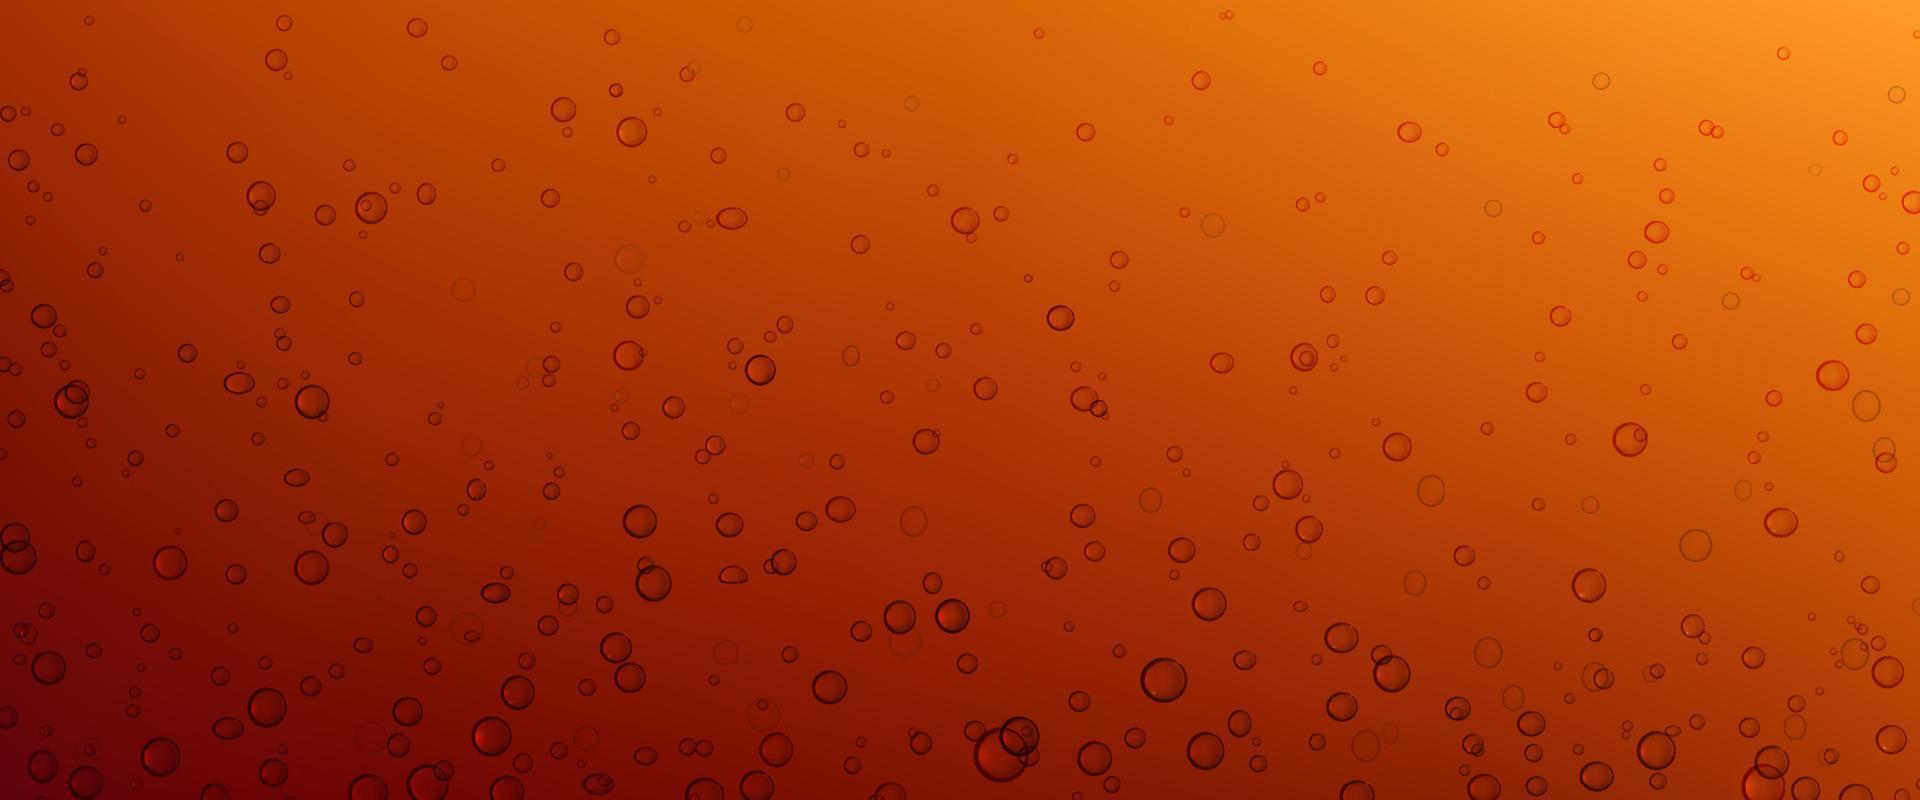 luft bubblor av cola, soda dryck eller öl textur vektor